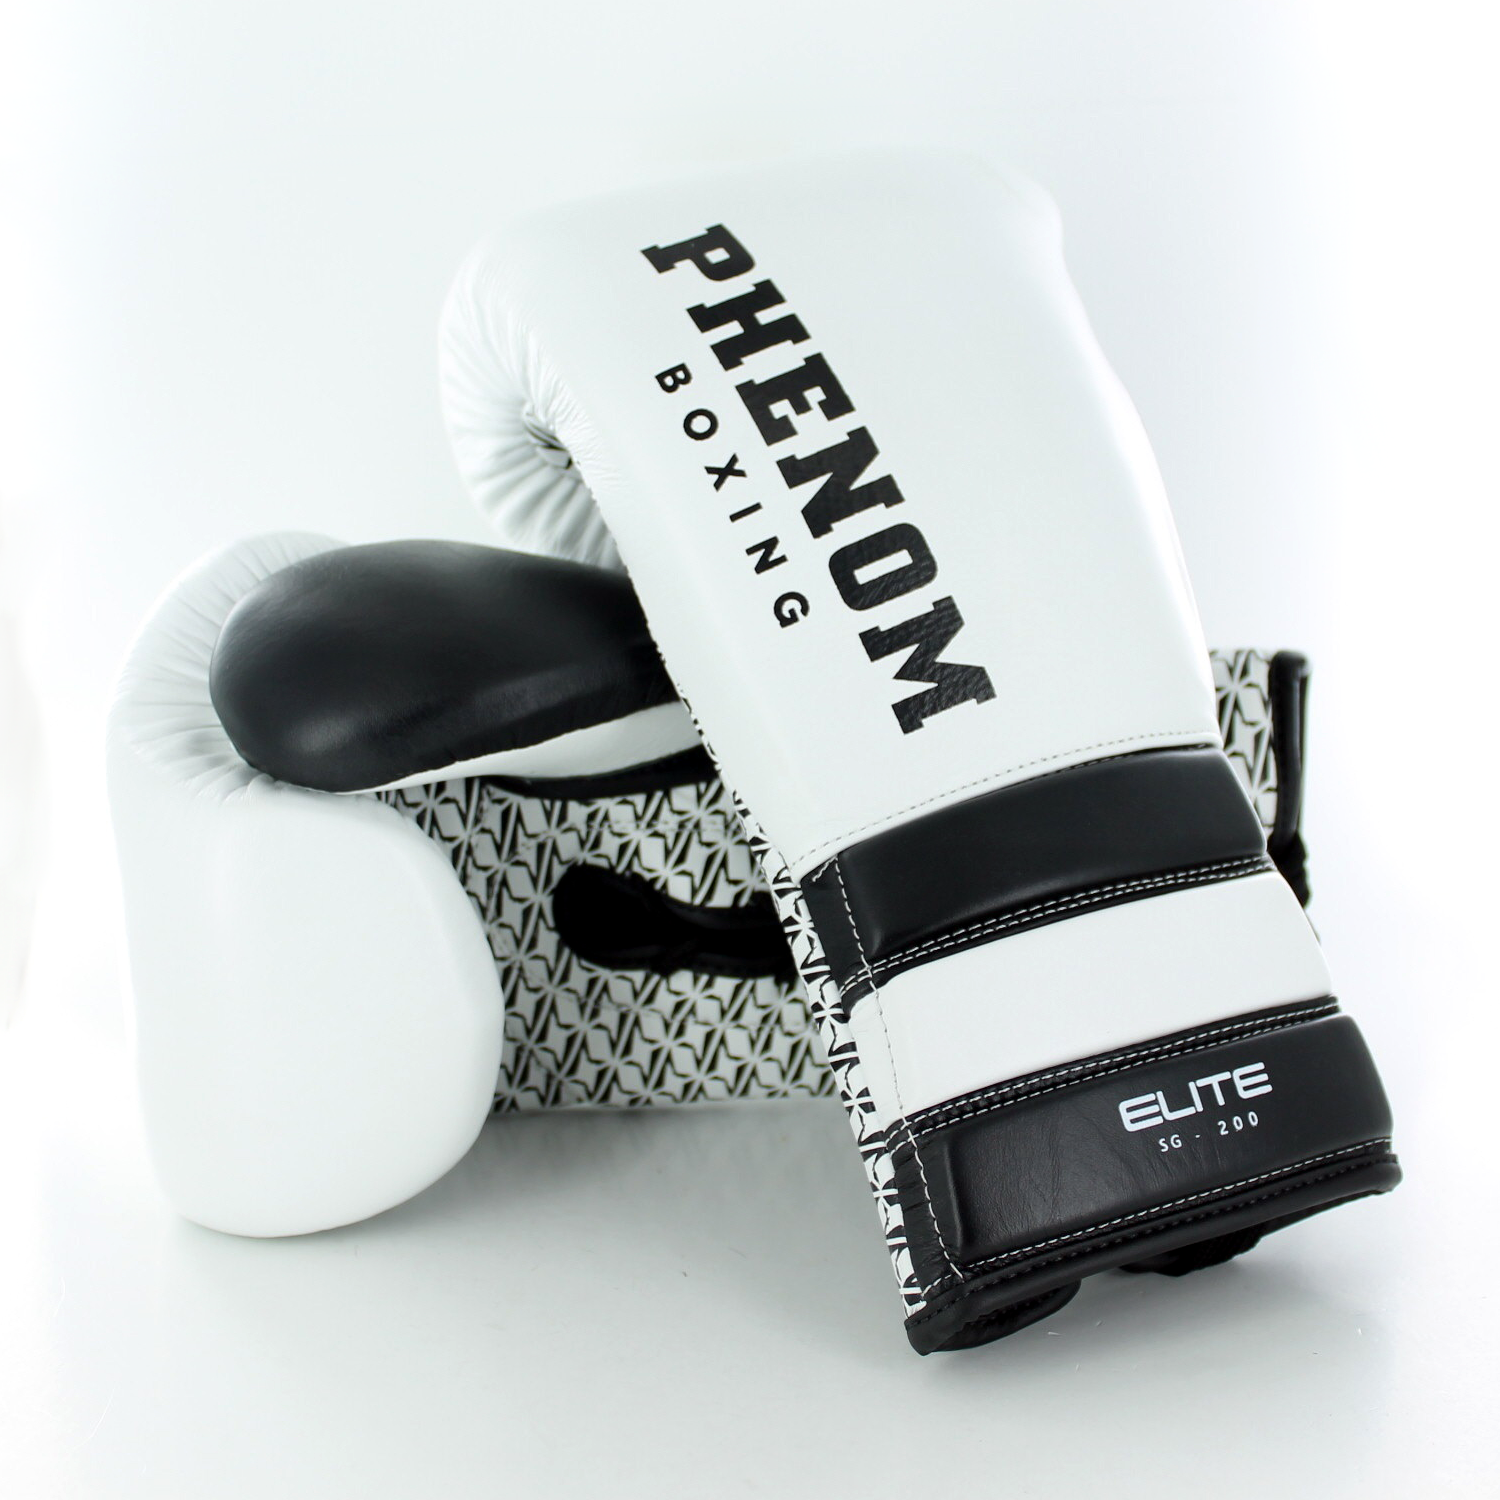 Comprar guantes MMA para sparring y competición - PHANTOM ATHLETICS